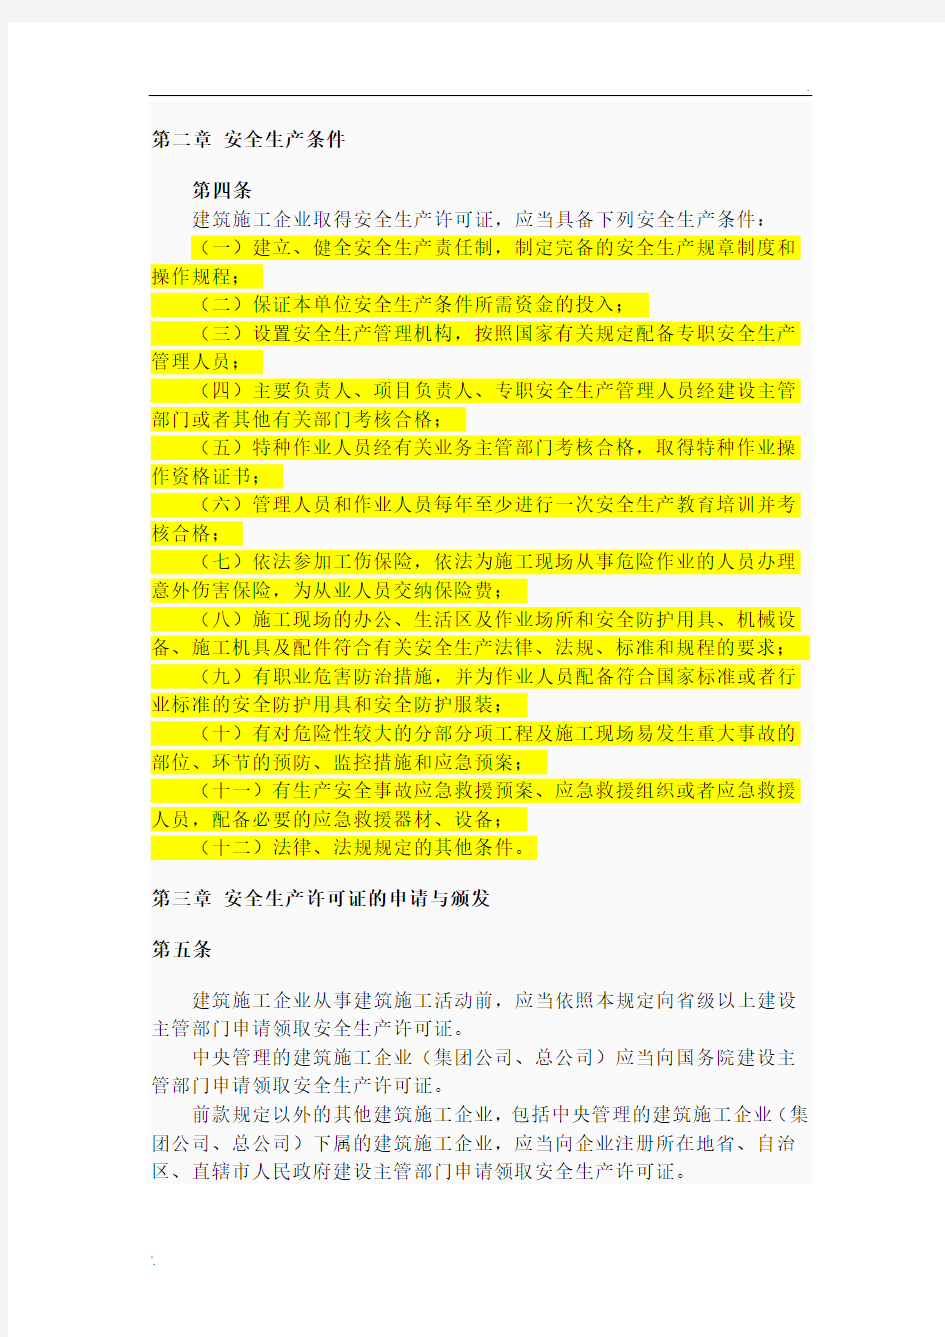 上海市关于领取安全生产许可证的注意事项